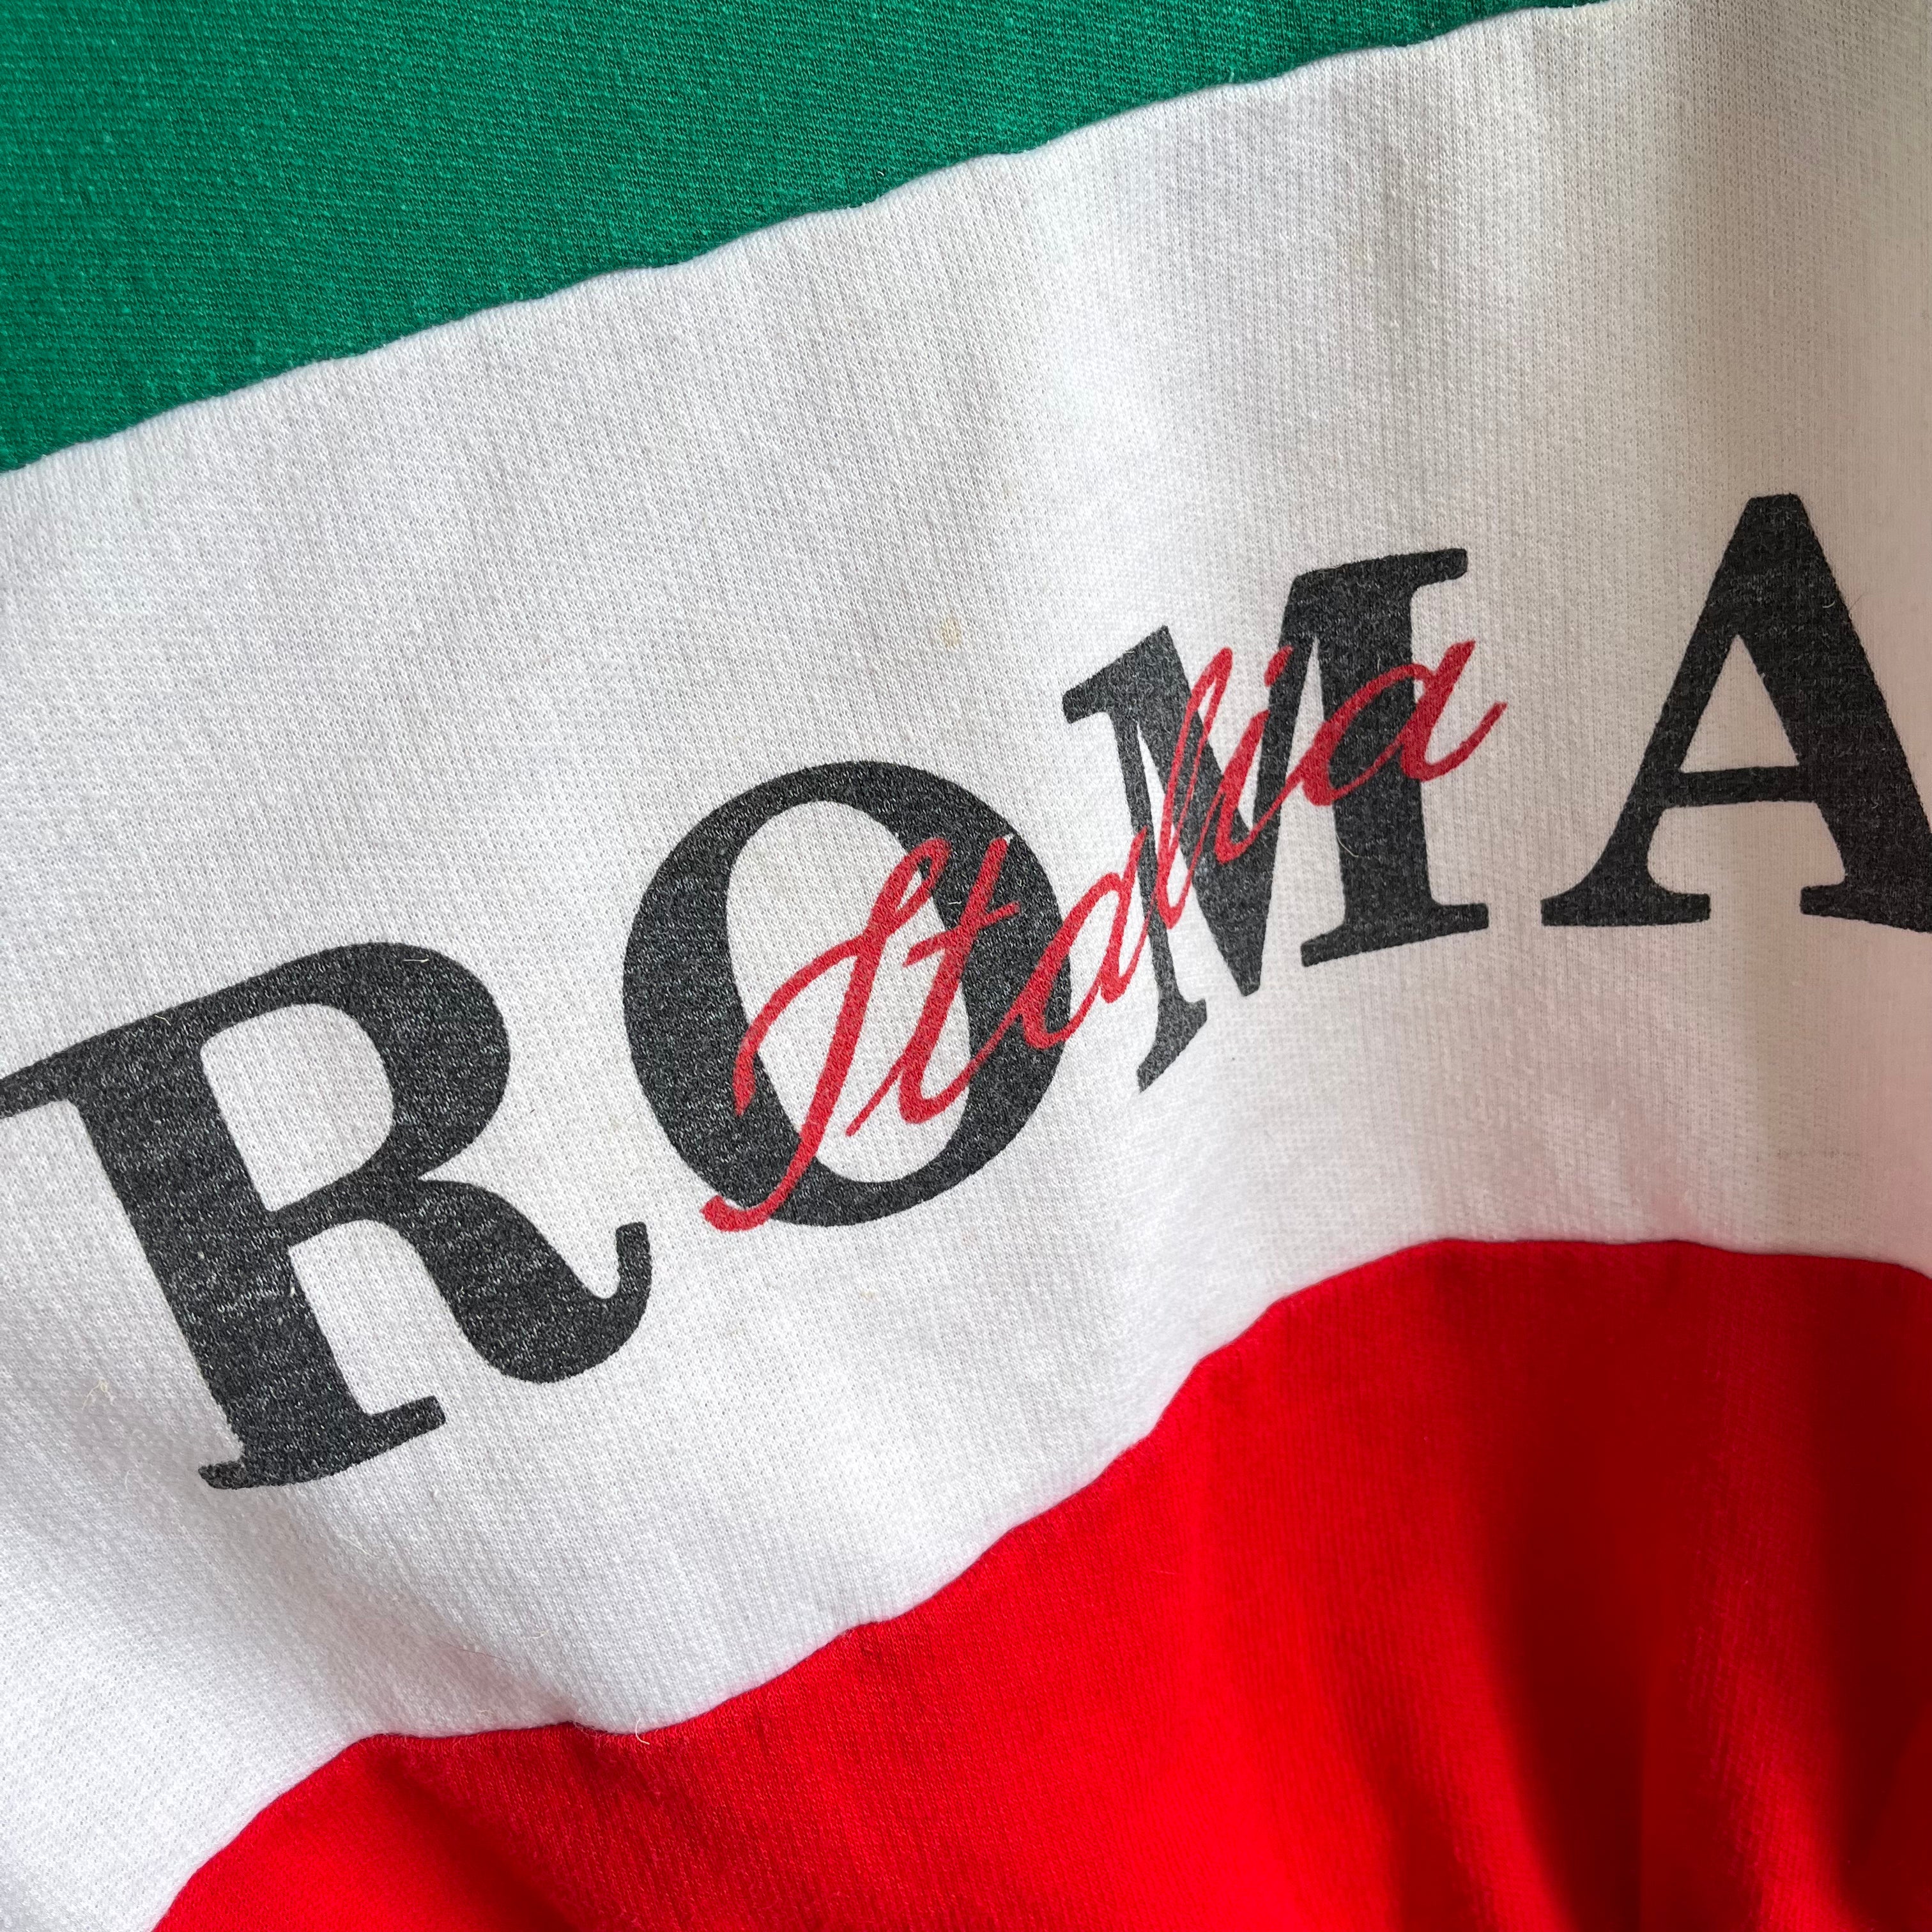 1990s Roma Italia Made In Italy Tourist RELIC!!!!!!!!!!!